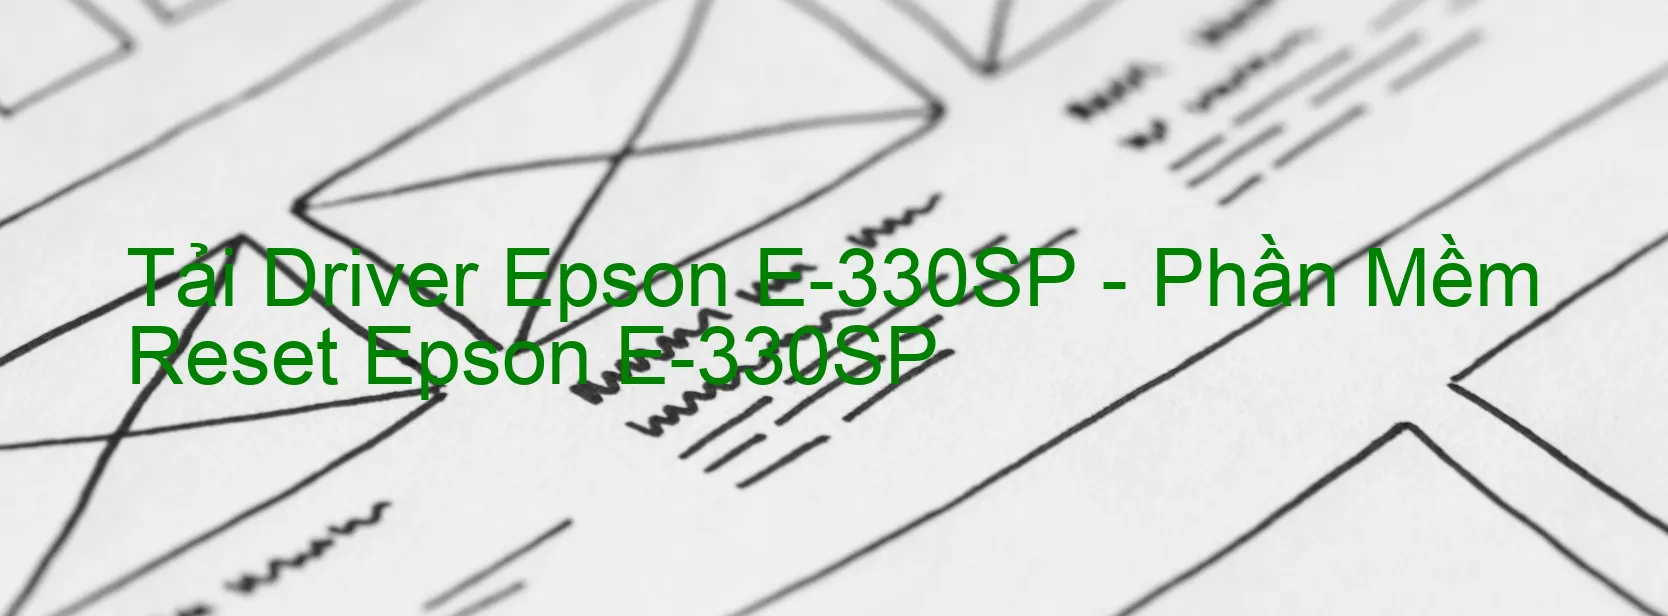 Driver Epson E-330SP, Phần Mềm Reset Epson E-330SP